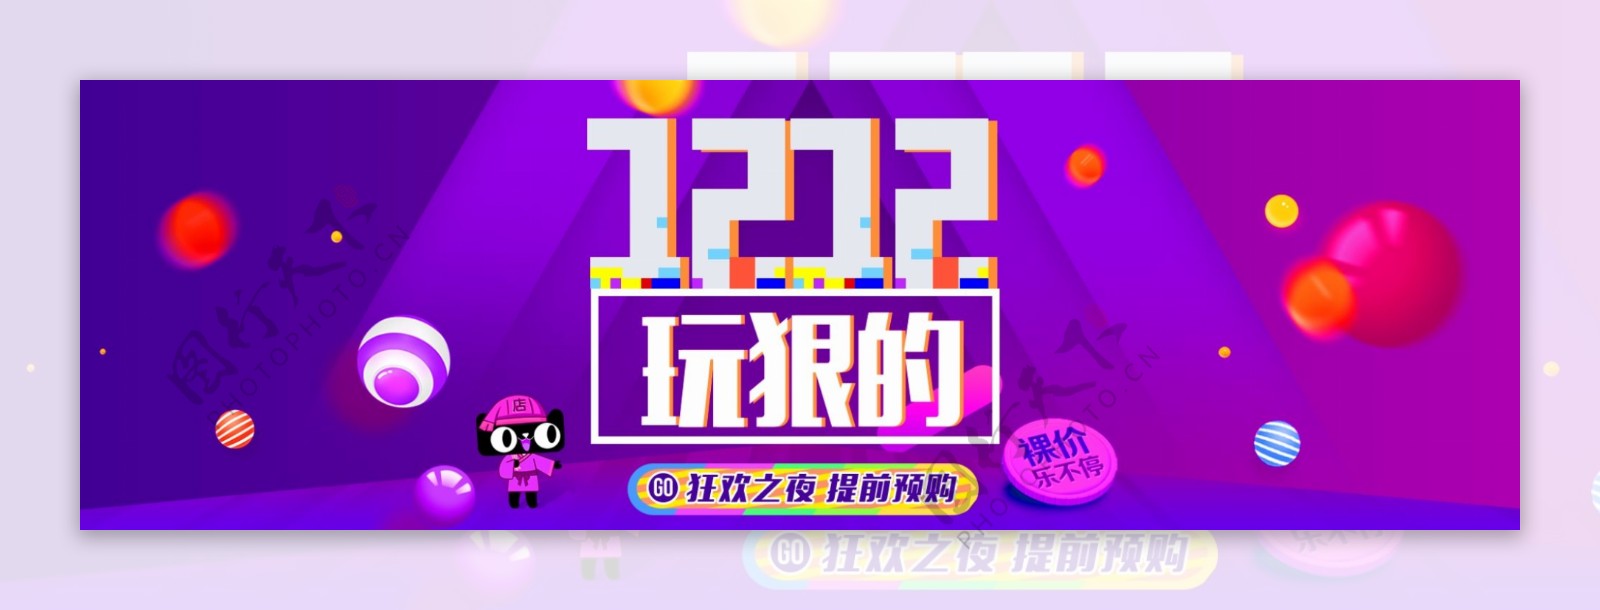 淘宝天猫双12促销节日海报